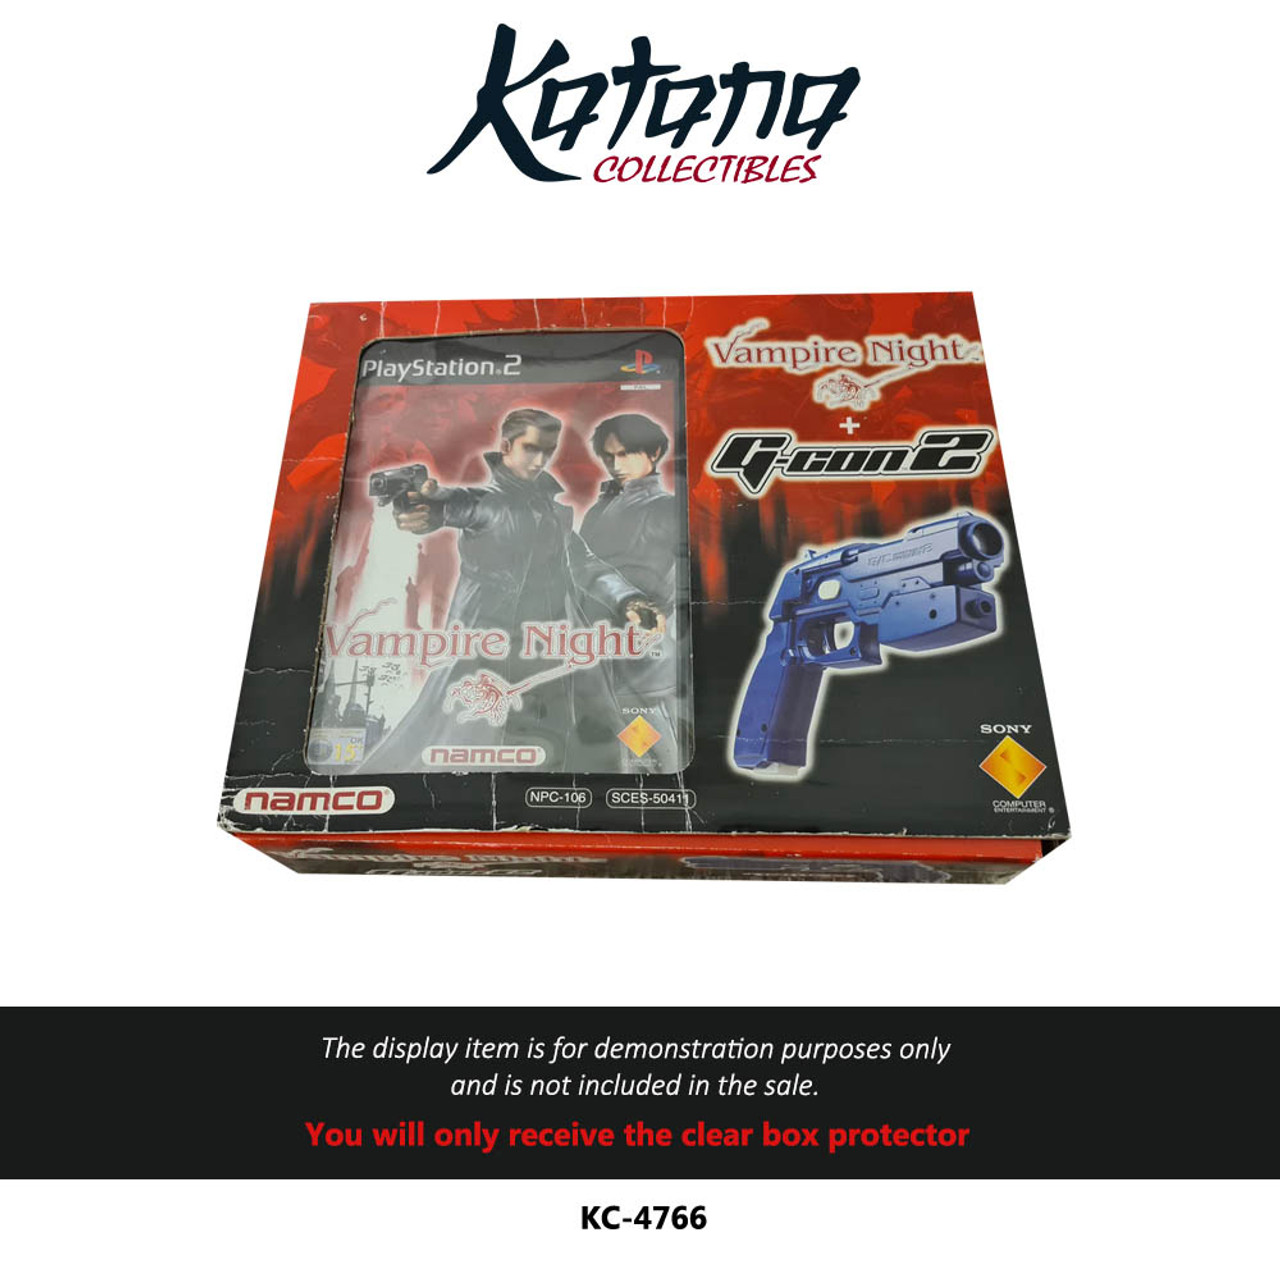 Katana Collectibles Protector For Vampire Night + Guncon 2 Box Set, PS2 UK Version